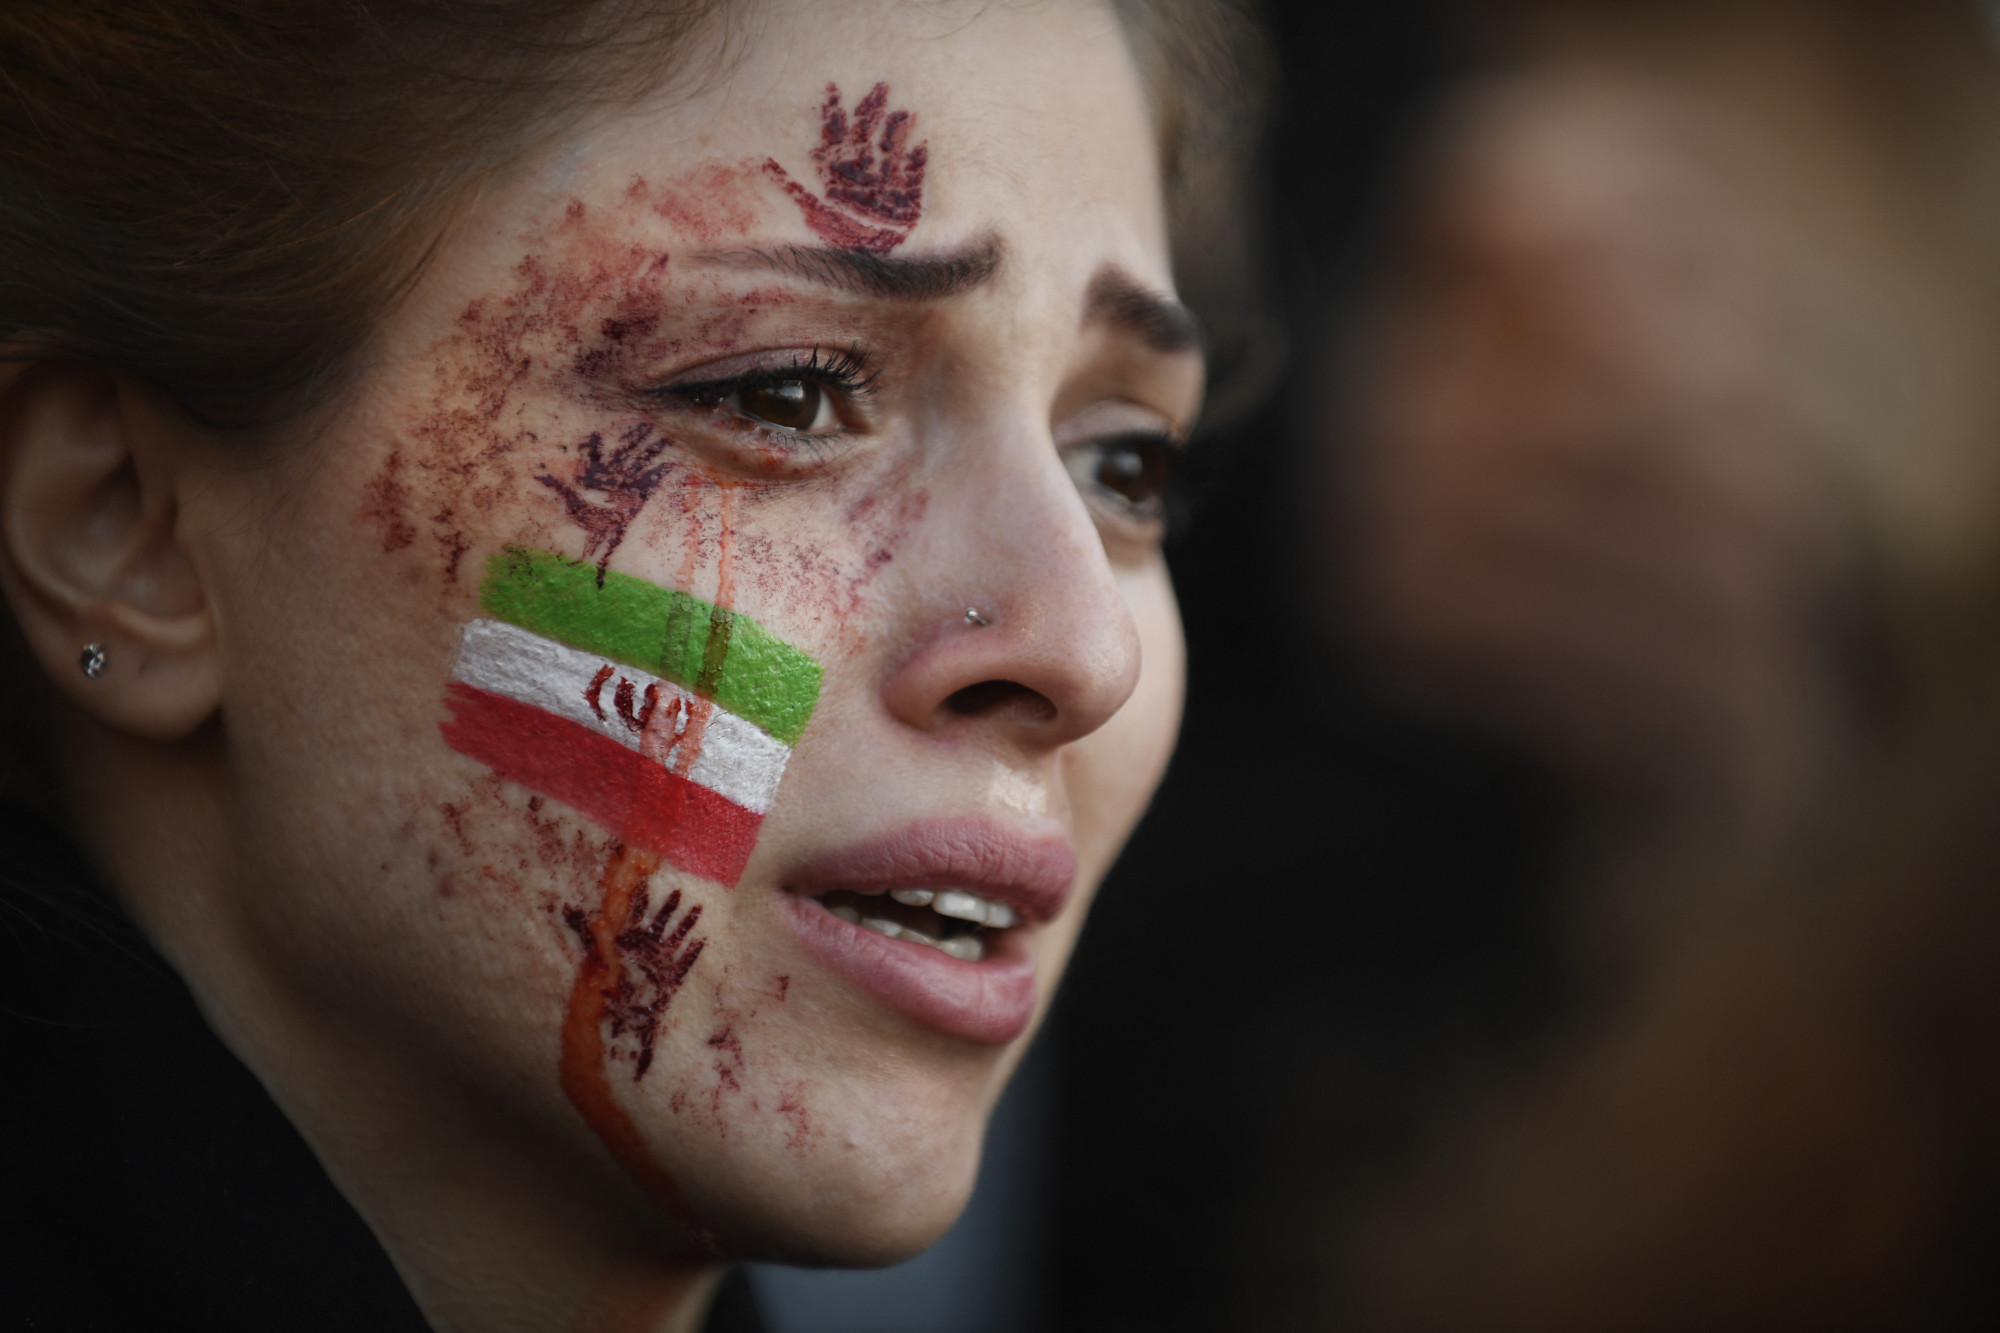 Legalább 23 gyerek halt meg egy hónap alatt az iráni tüntetéseken - állítja az Amnesty International